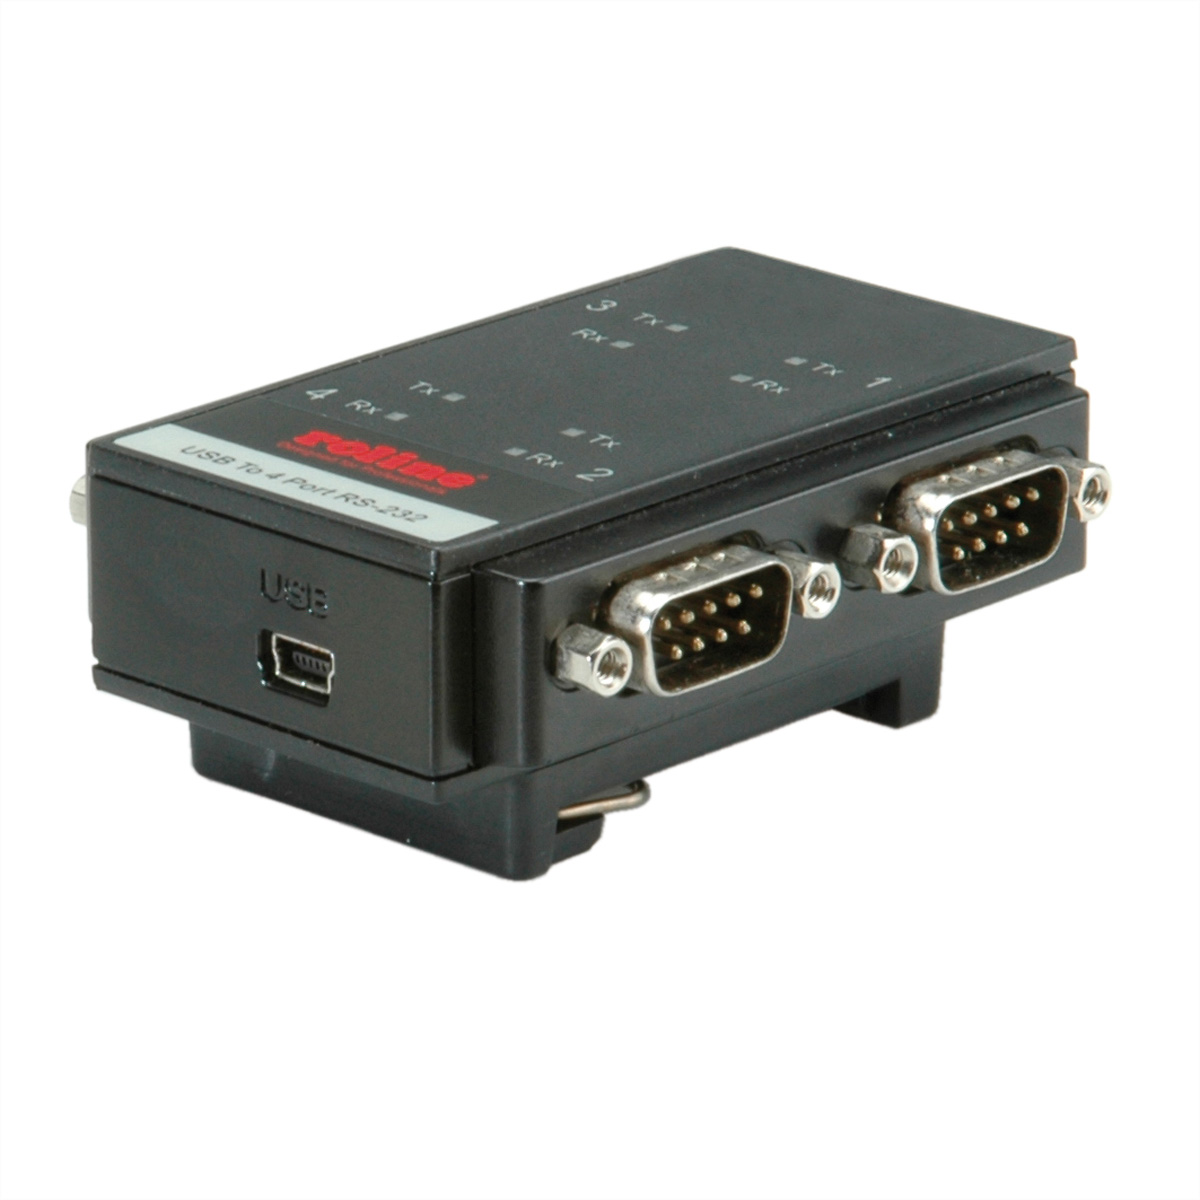 Port USB-Seriell 2.0 ROLINE 4 RS232 Adapter für DIN nach Hutschiene, USB Konverter